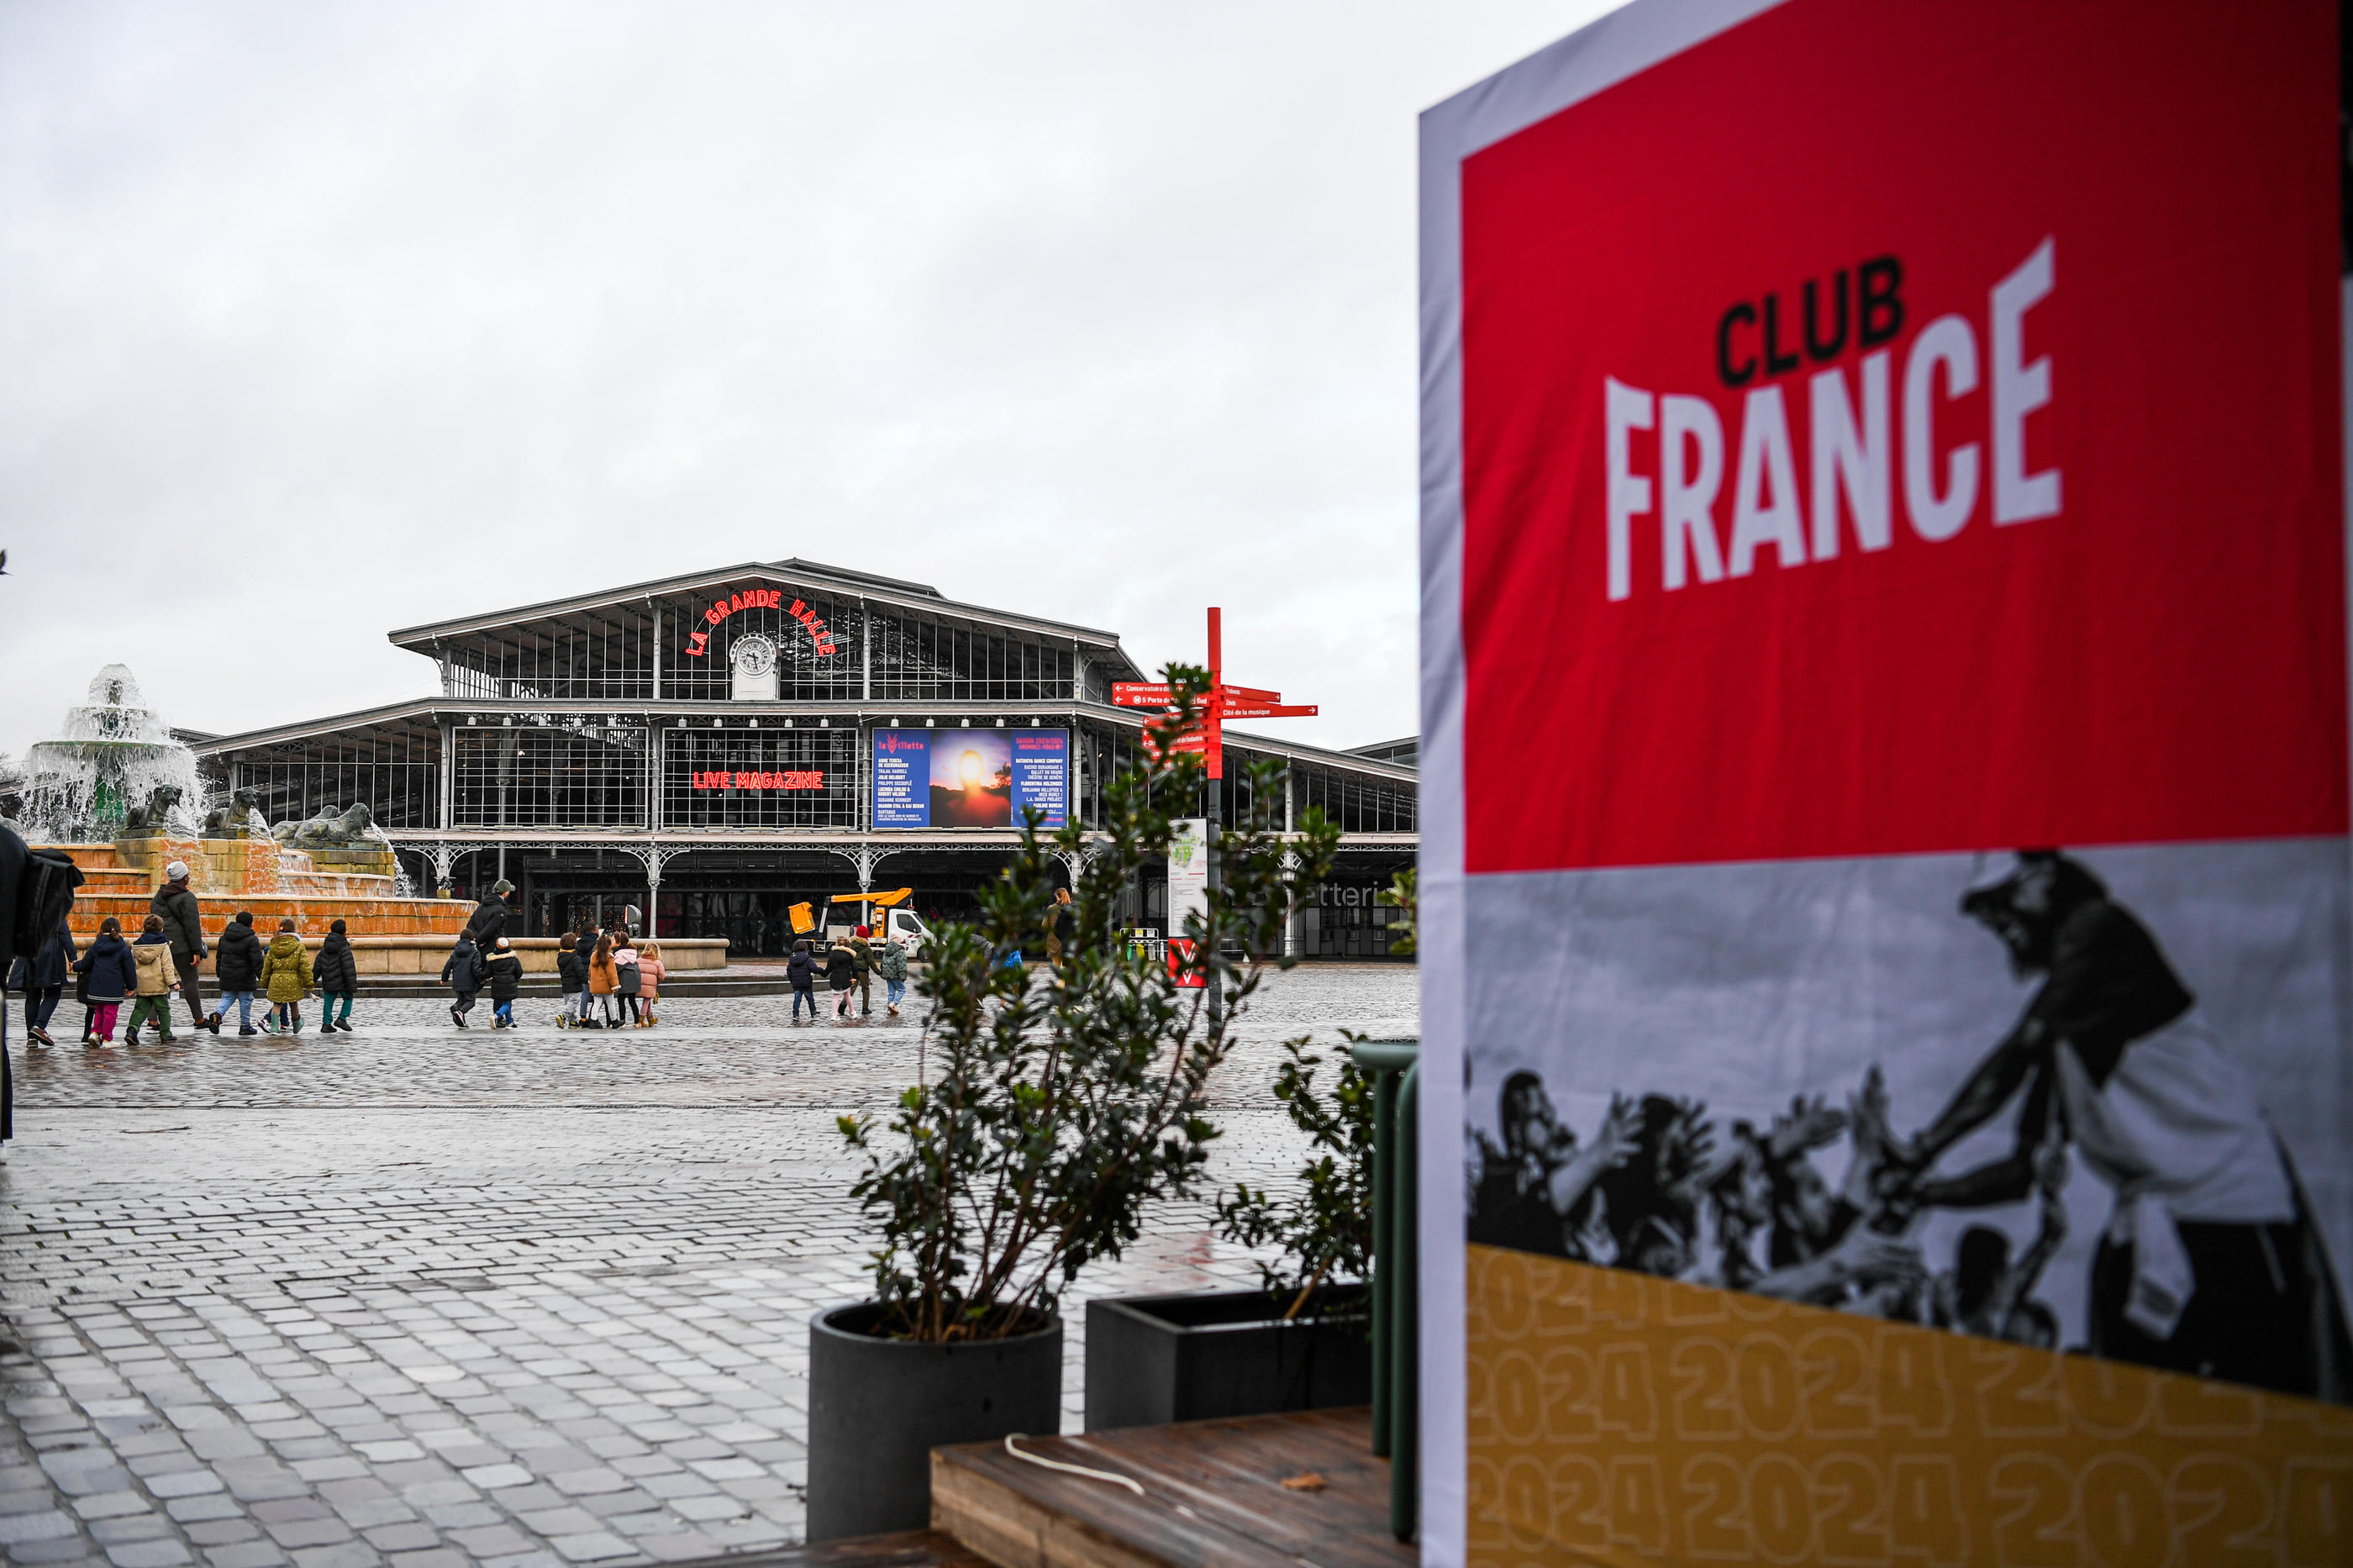 Le Club France sera installé à la La Villette, dans le XIXe arrondissement de Paris, durant toute la période des Jeux olympiques et des Jeux paralympiques. Daniel Derajinski/Icon Sport